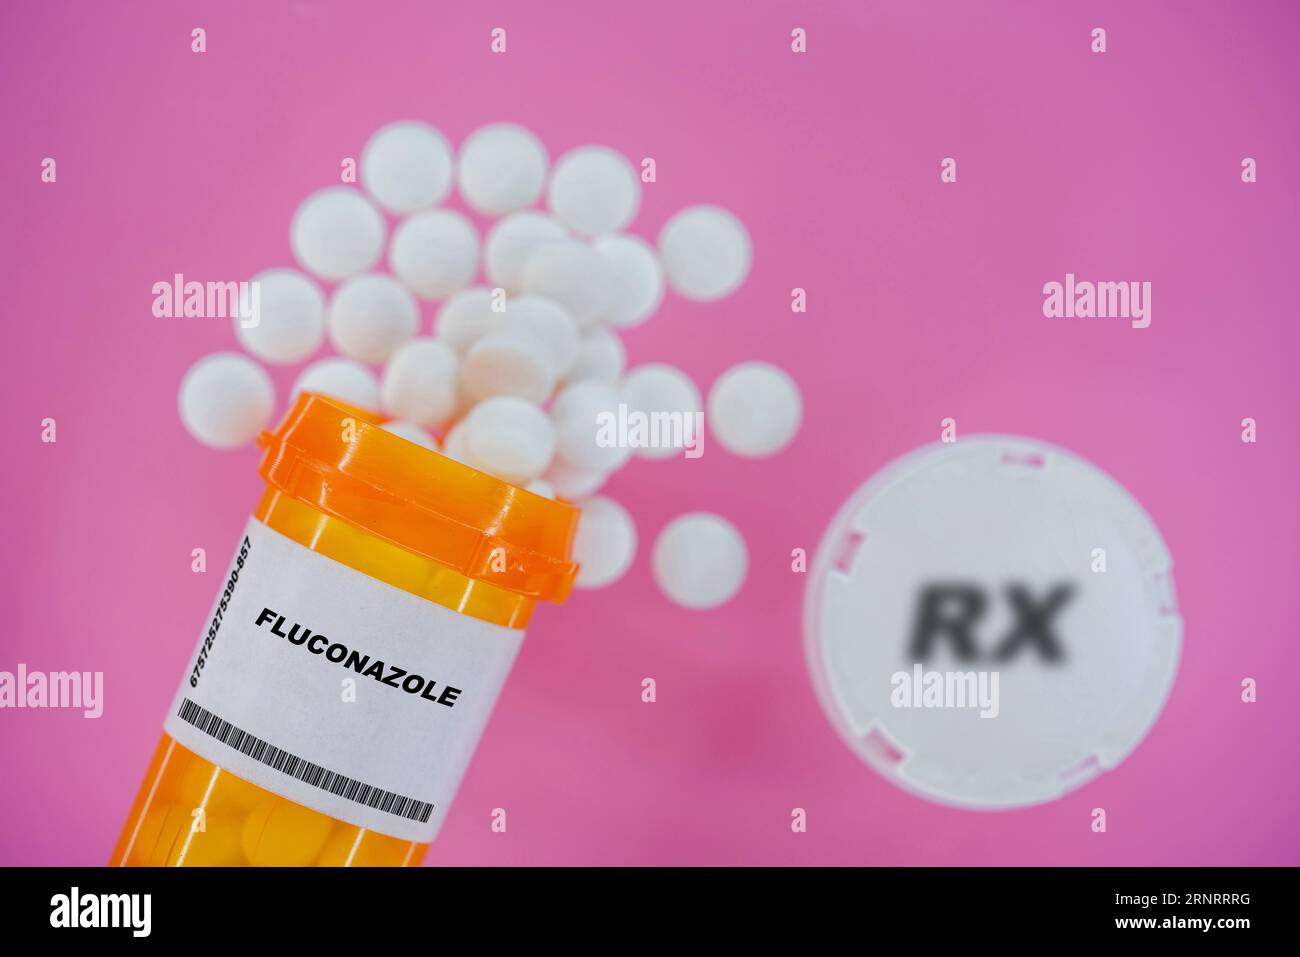 Fluconazole Rx píldoras de medicina en vial pláctico con tabletas. Pastillas derramando desde el contenedor amarillo sobre fondo rosa. Foto de stock